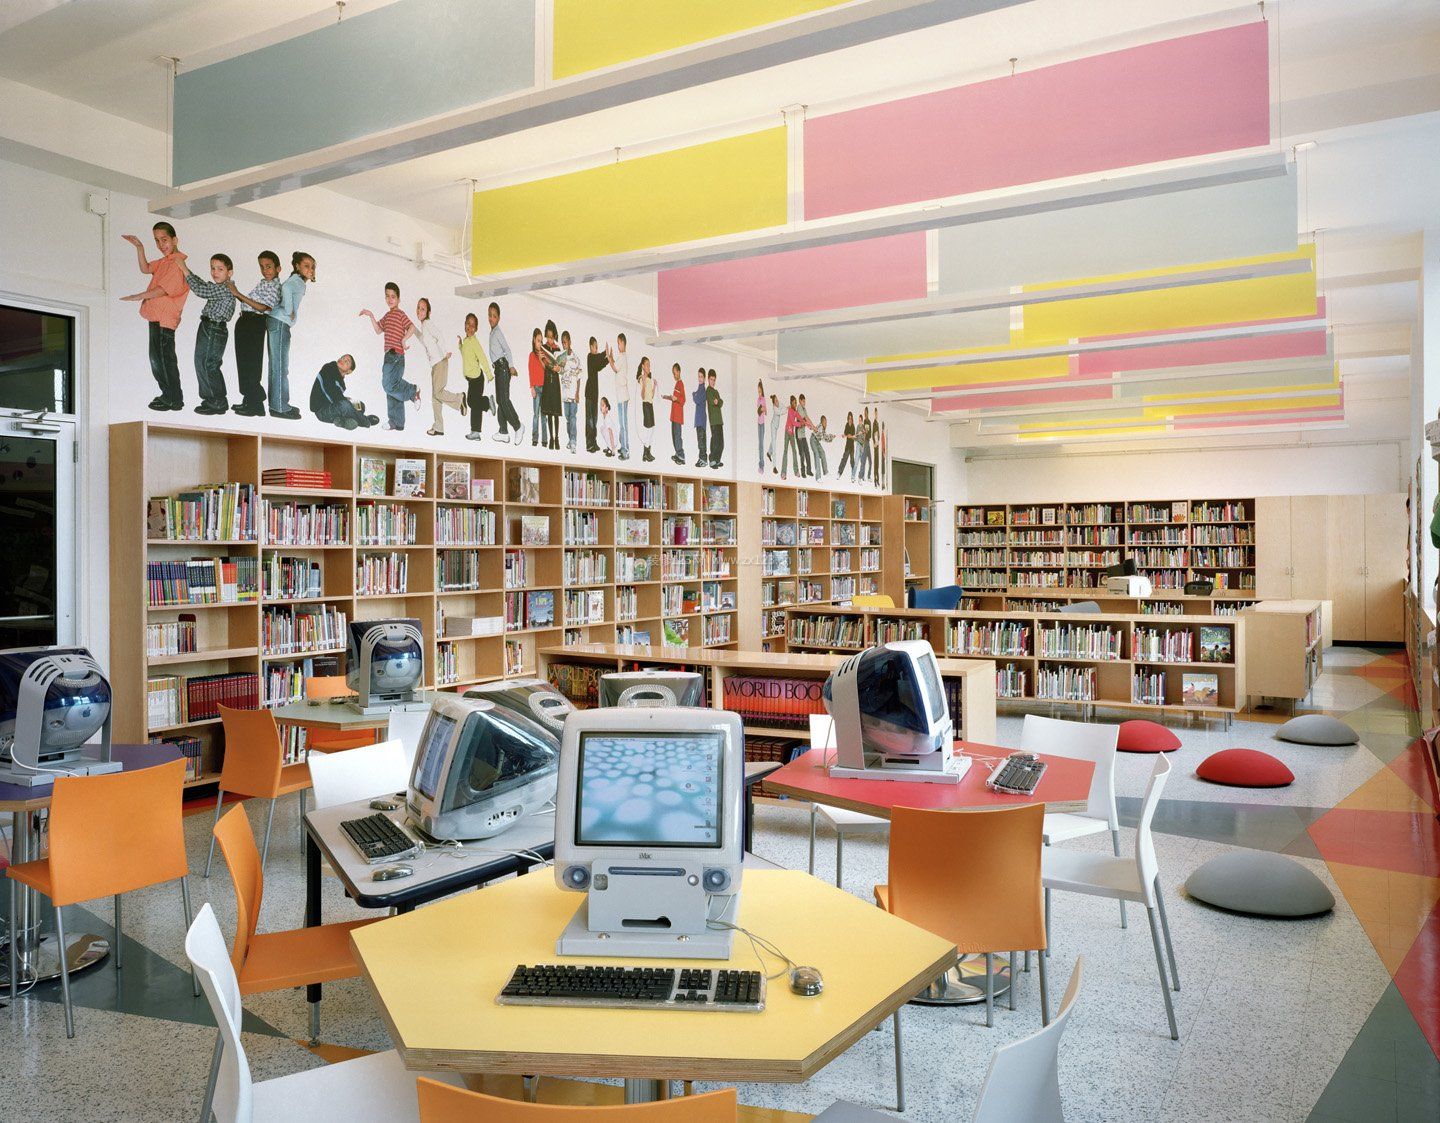 简约时尚风格图书馆空间装修效果图片